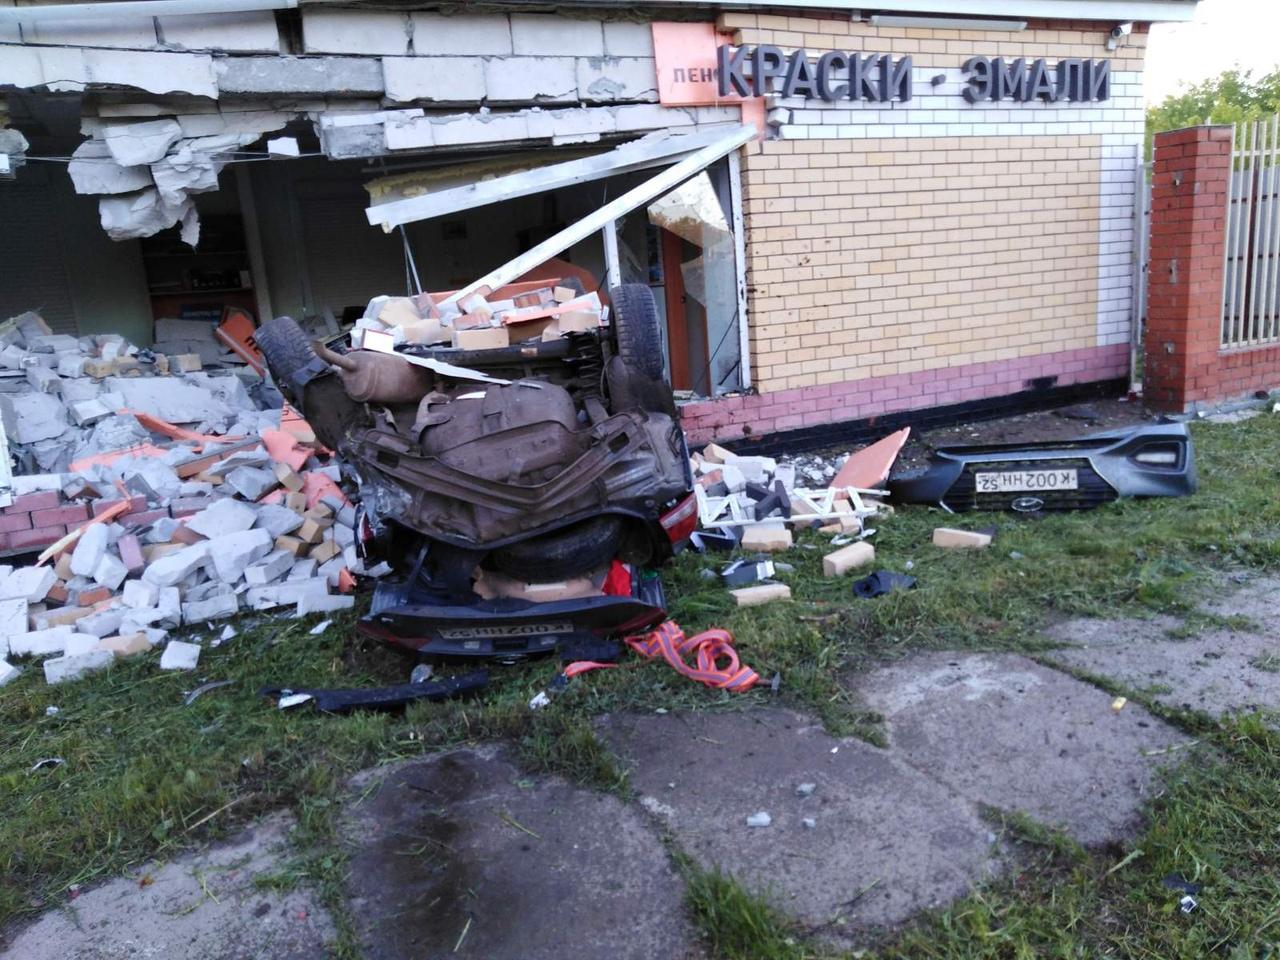 В Чебоксарах Hyundai на огромной скорости влетел в здание, водитель погиб